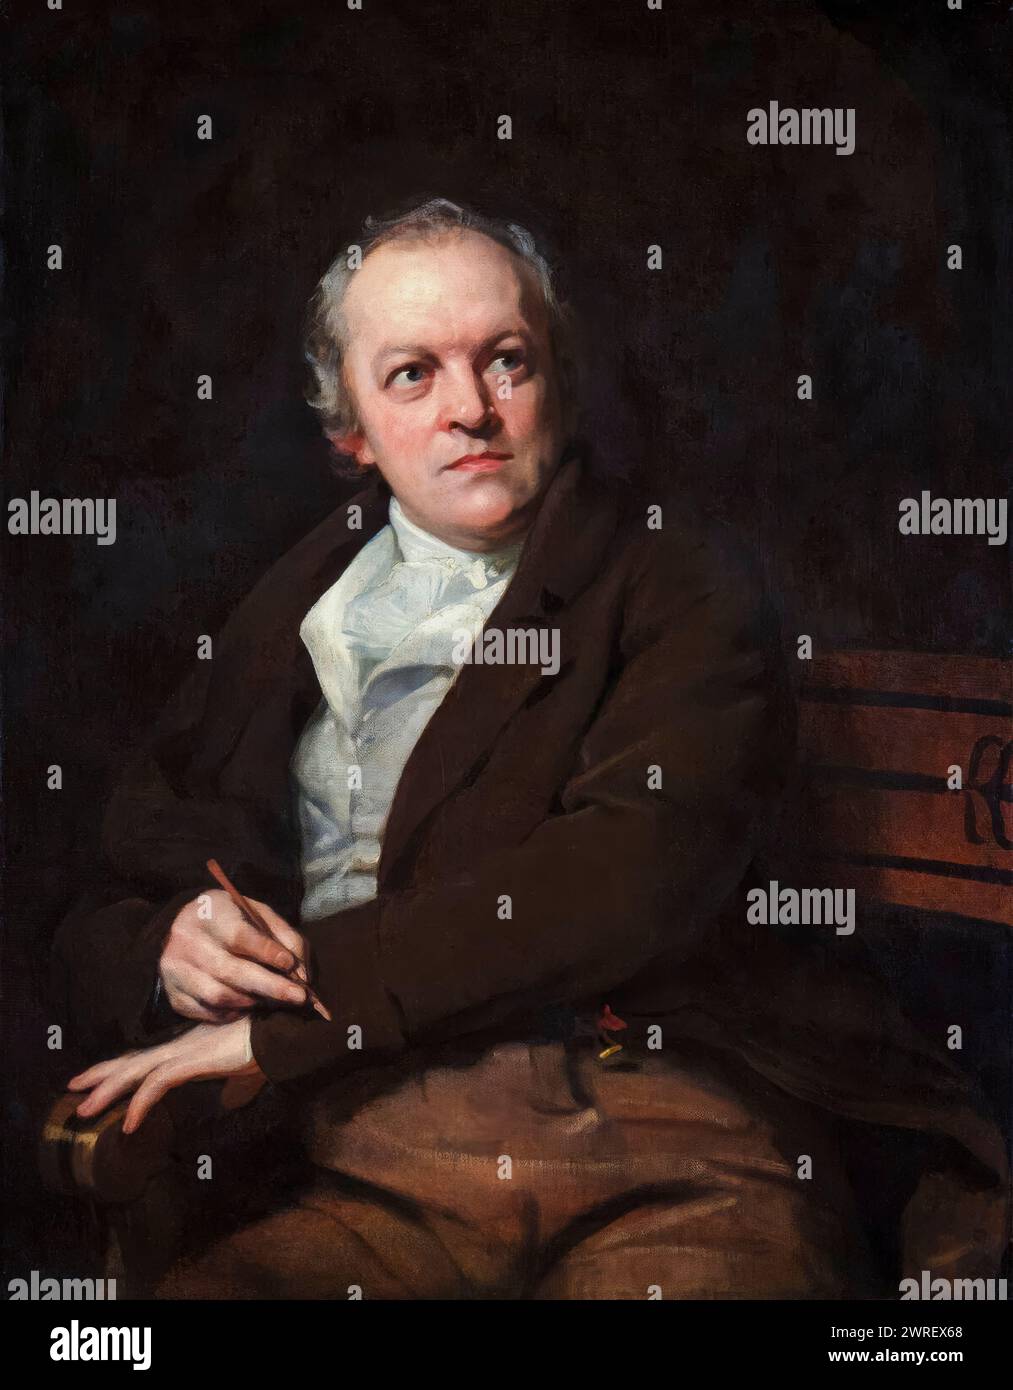 William Blake (1757–1827), englischer Dichter, Maler und Printmacher, Porträtgemälde in Öl auf Leinwand von Thomas Phillips, 1807 Stockfoto